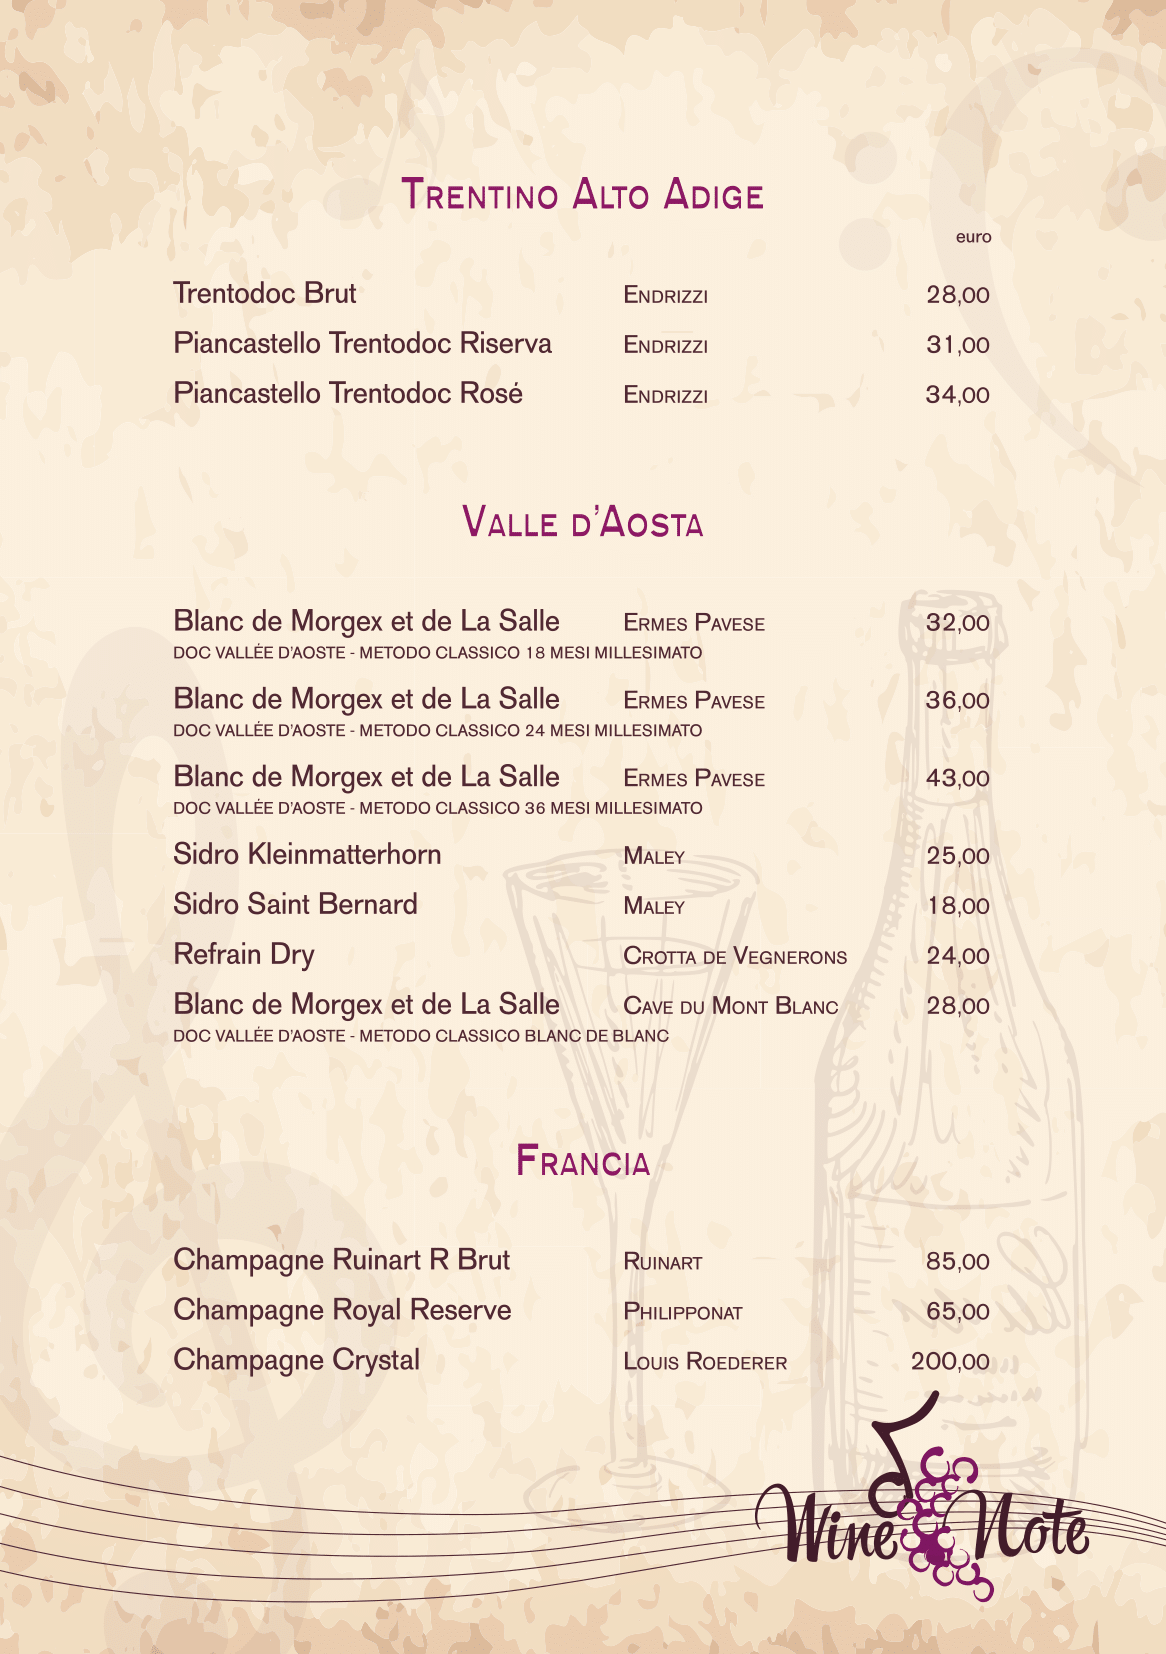 Wine note menu e vini A5-19